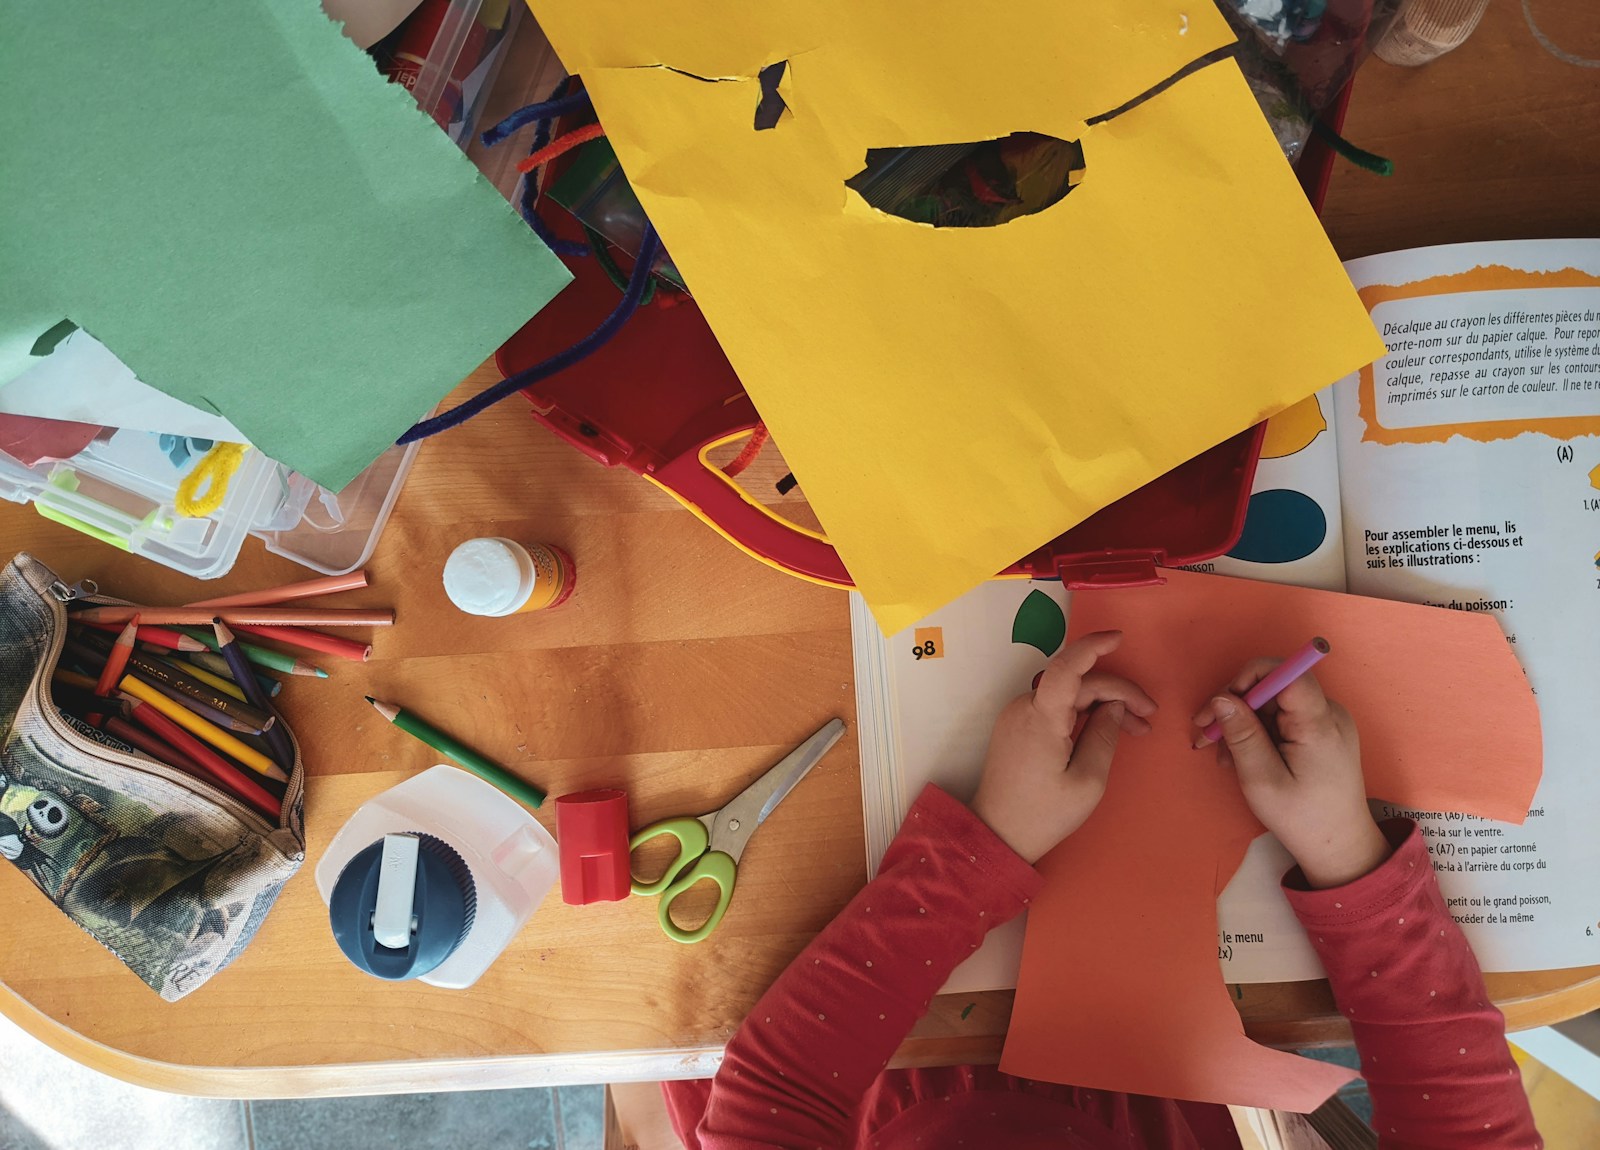 Home Depot Kids Workshops: Boosting Childhood Creativity for Free